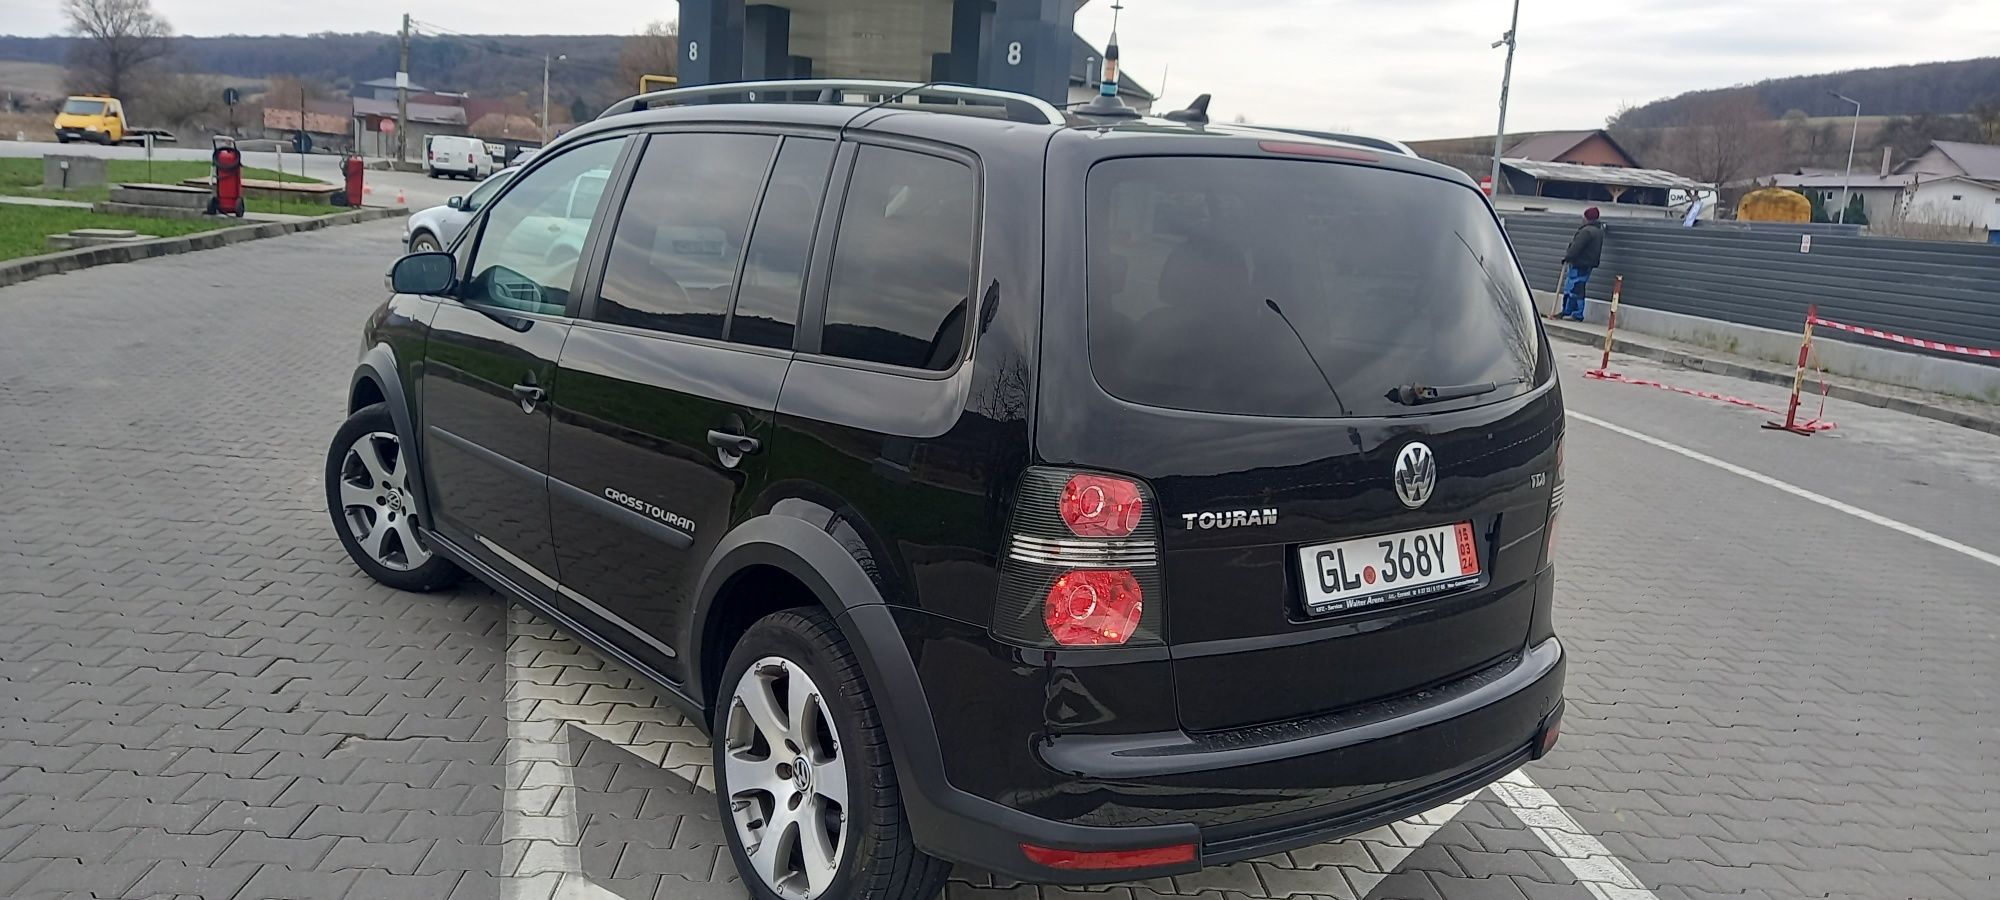 Volkswagen touran cross//motor 1.9 impecabil